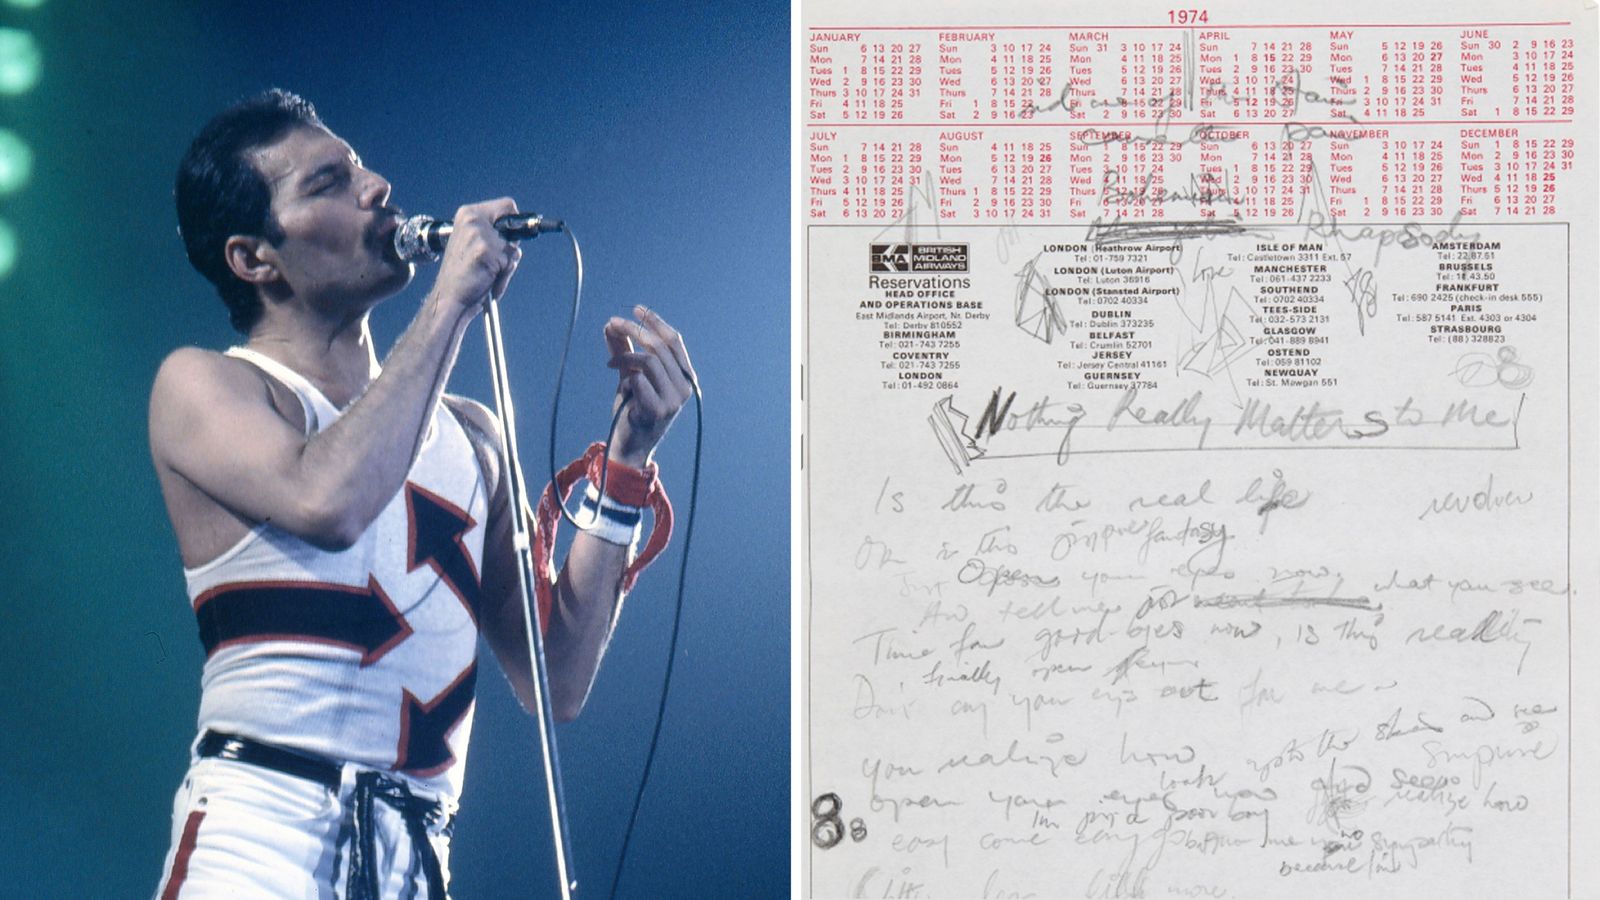 Queen’s Bohemian Rhapsody: titre alternatif pour une chanson à succès révélé par des brouillons manuscrits de Freddie Mercury |  Actualités Ents & Arts